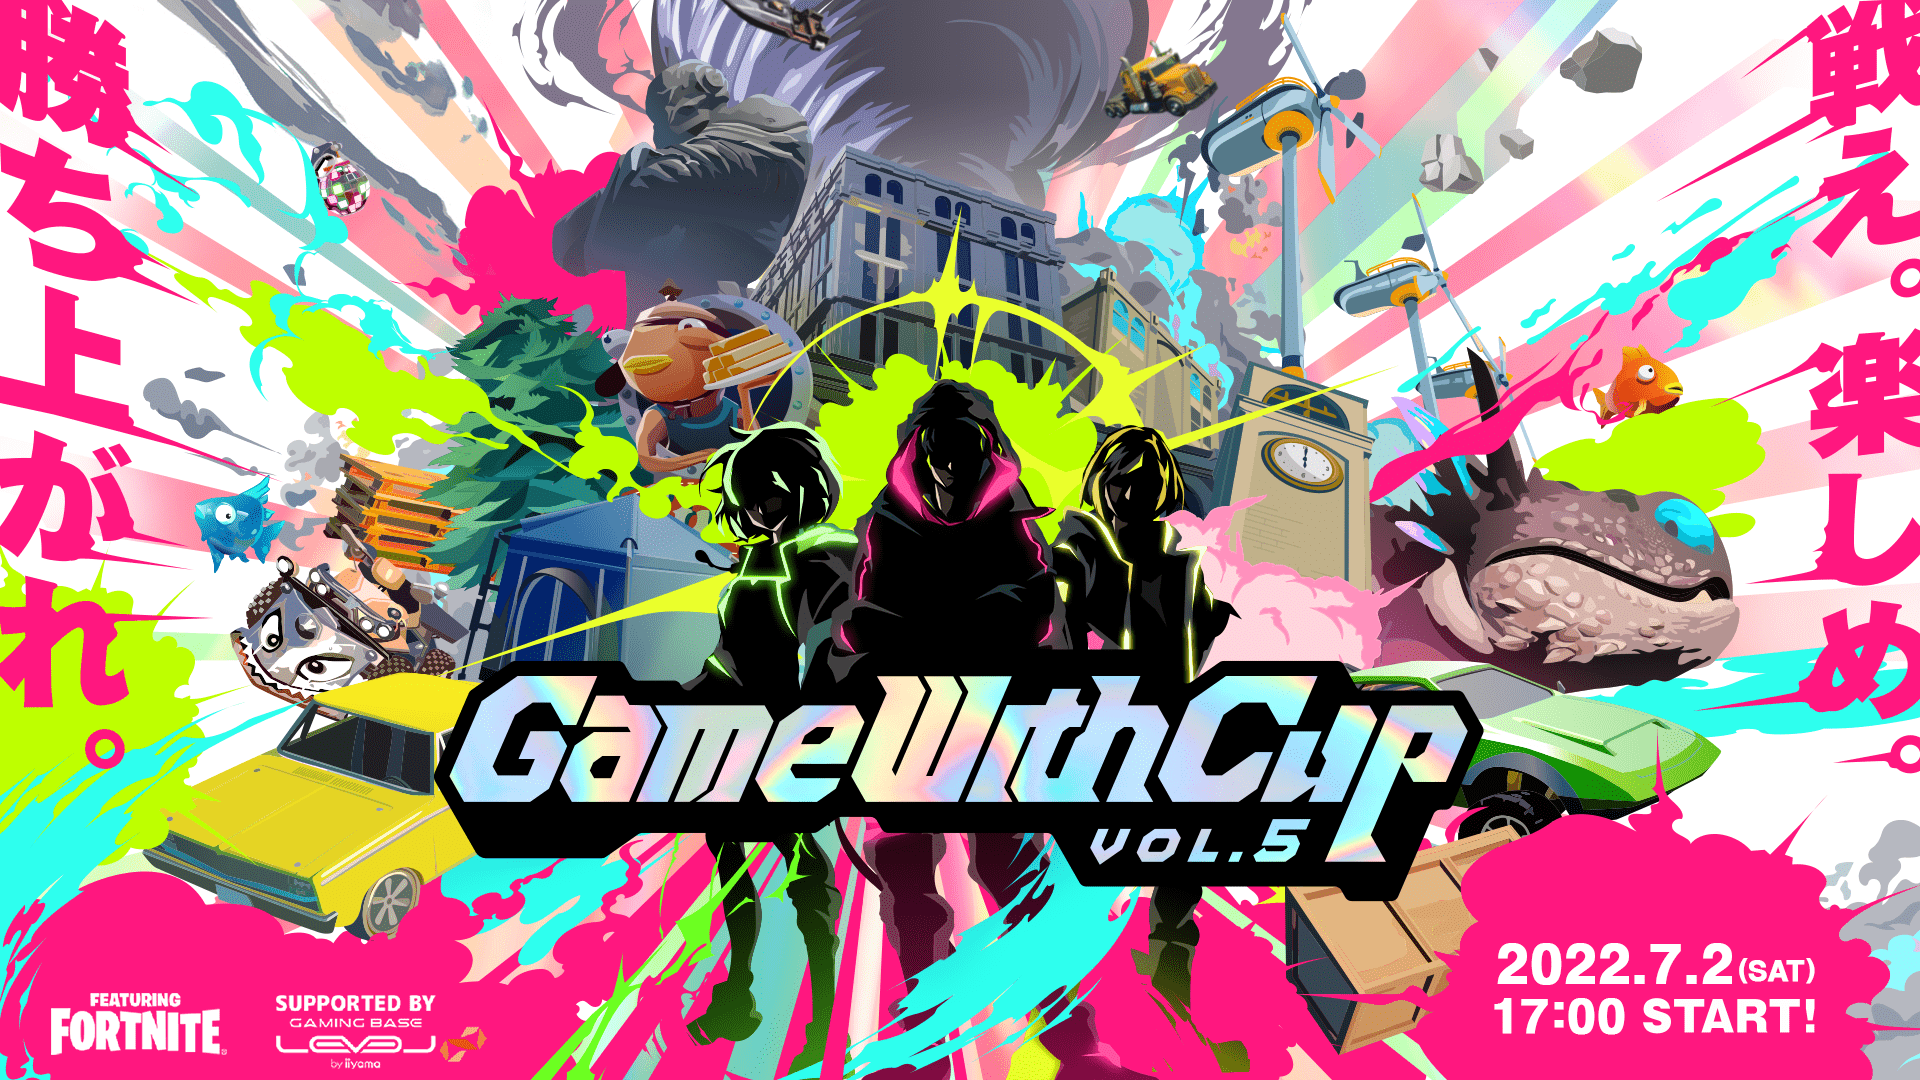 【大会情報】GameWithCup Featuring Fortnite vol.5 Supported By LEVEL ∞【2022年7月2日】